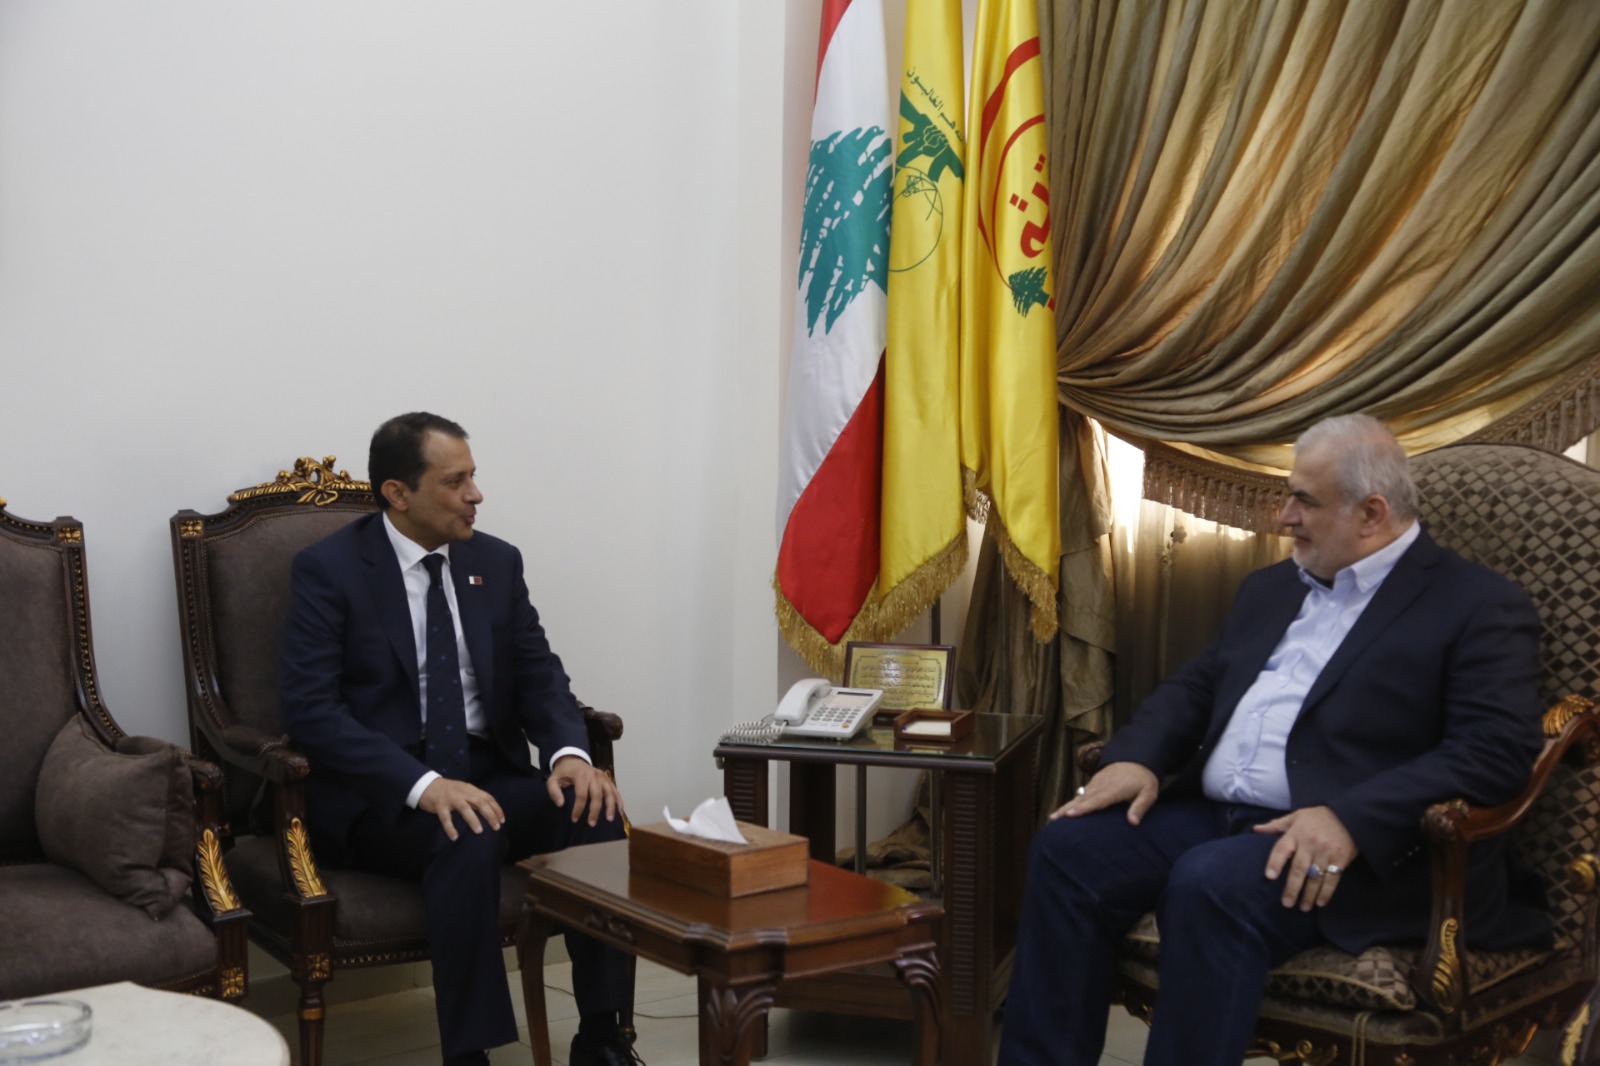 النائب رعد استقبل السفير القطري الجديد لدى لبنان في حارة حريك في زيارة تعارفية